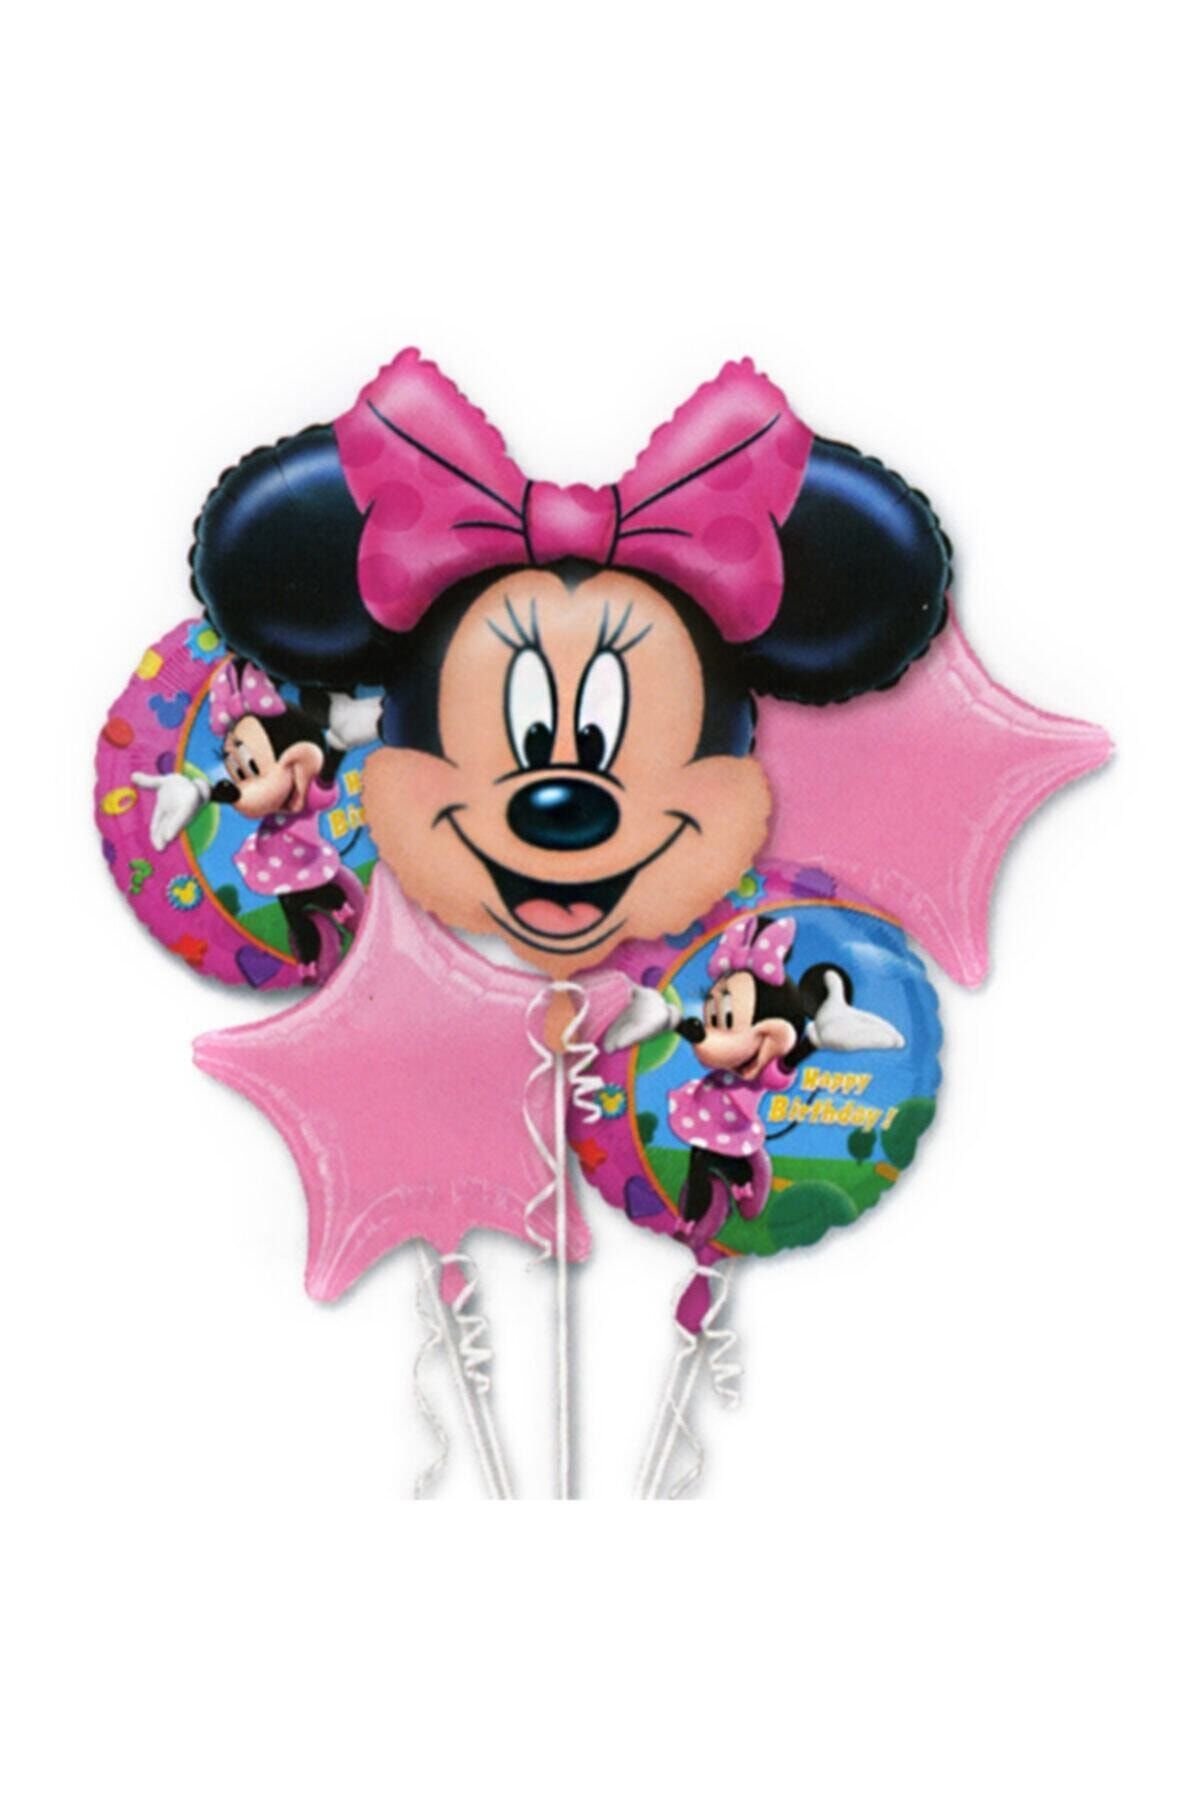 Organizasyon Pazarı Minnie Mouse 5'li Folyo Balon Set